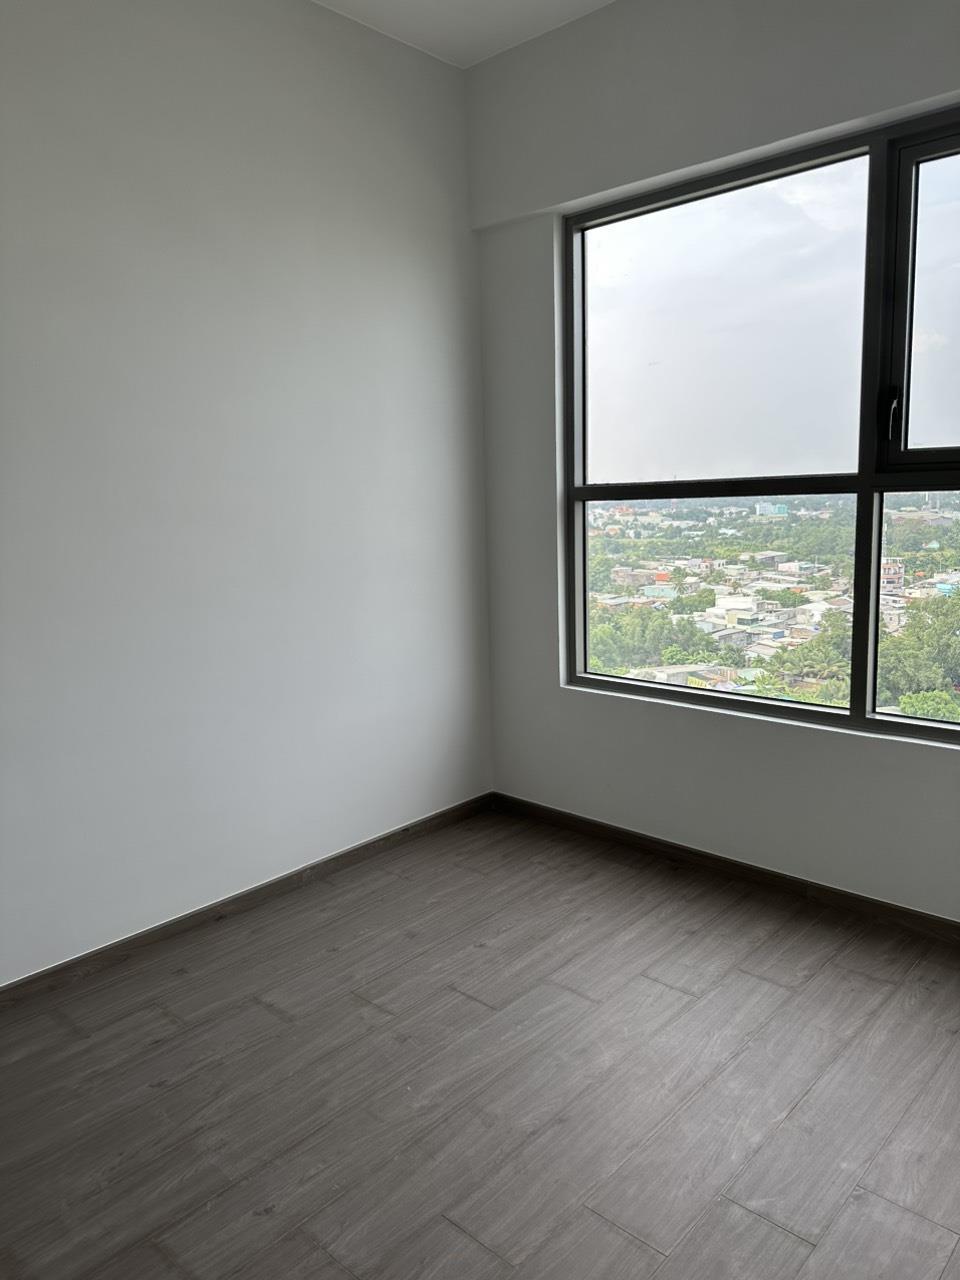 Cho thuê chung cư mới West Gate Park 59 m² - 2 PN, 2 WC chỉ 5tr/thang631223